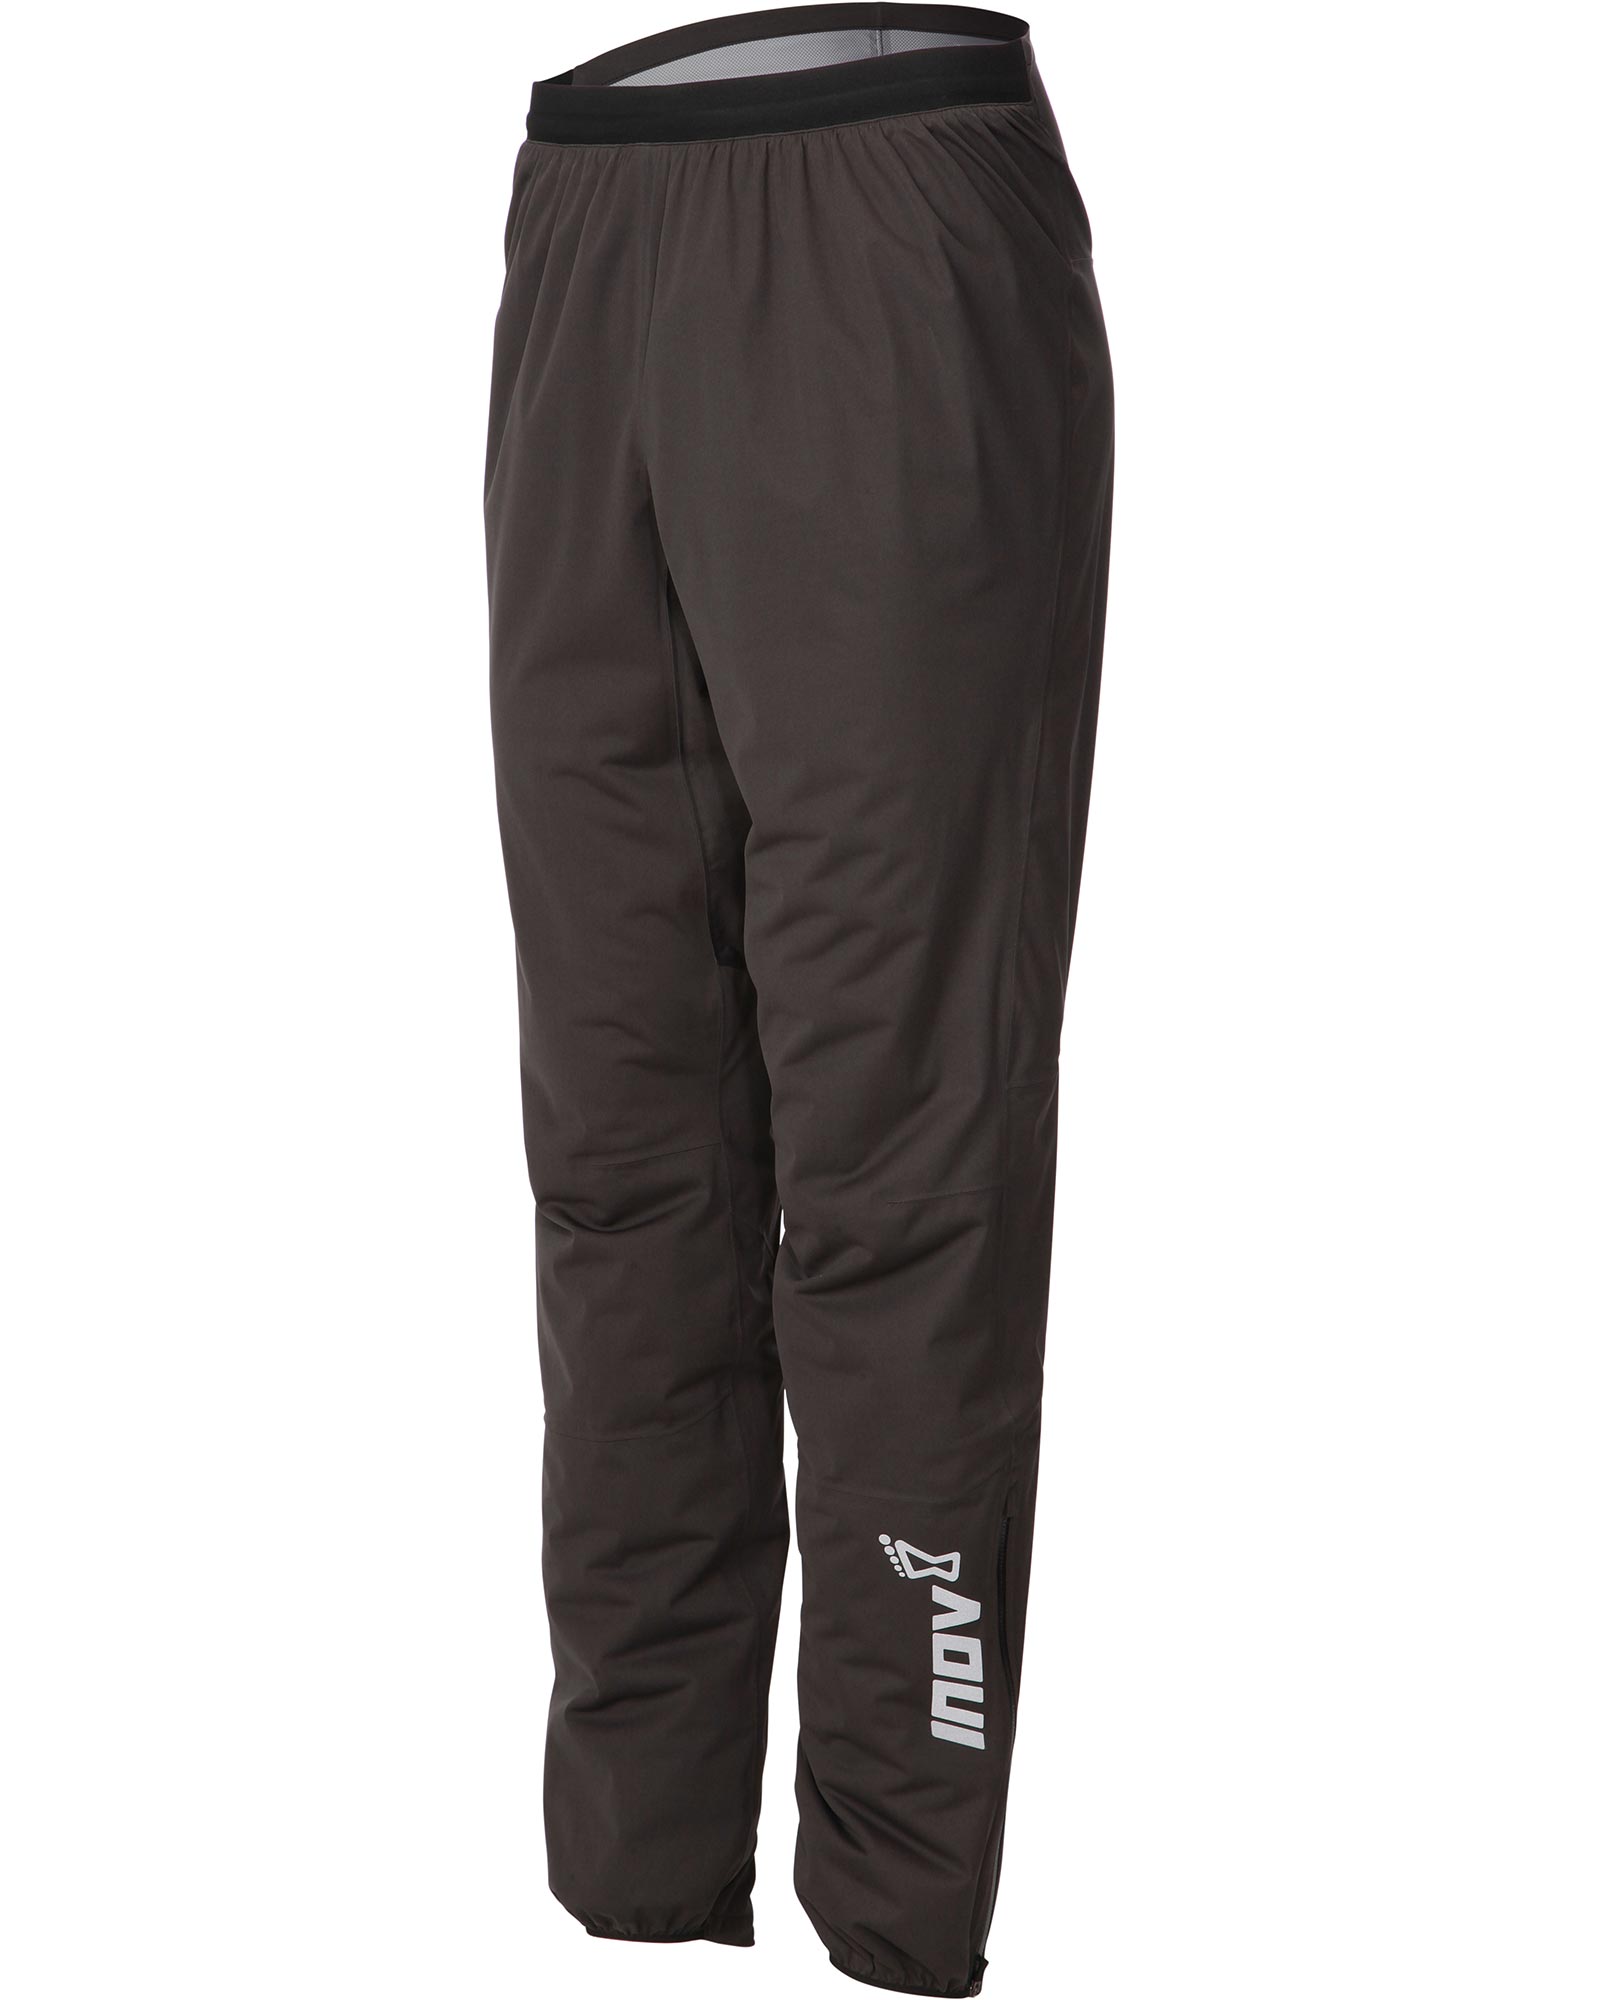 Inov 8 Waterproof Trail Men’s Pants - black XL